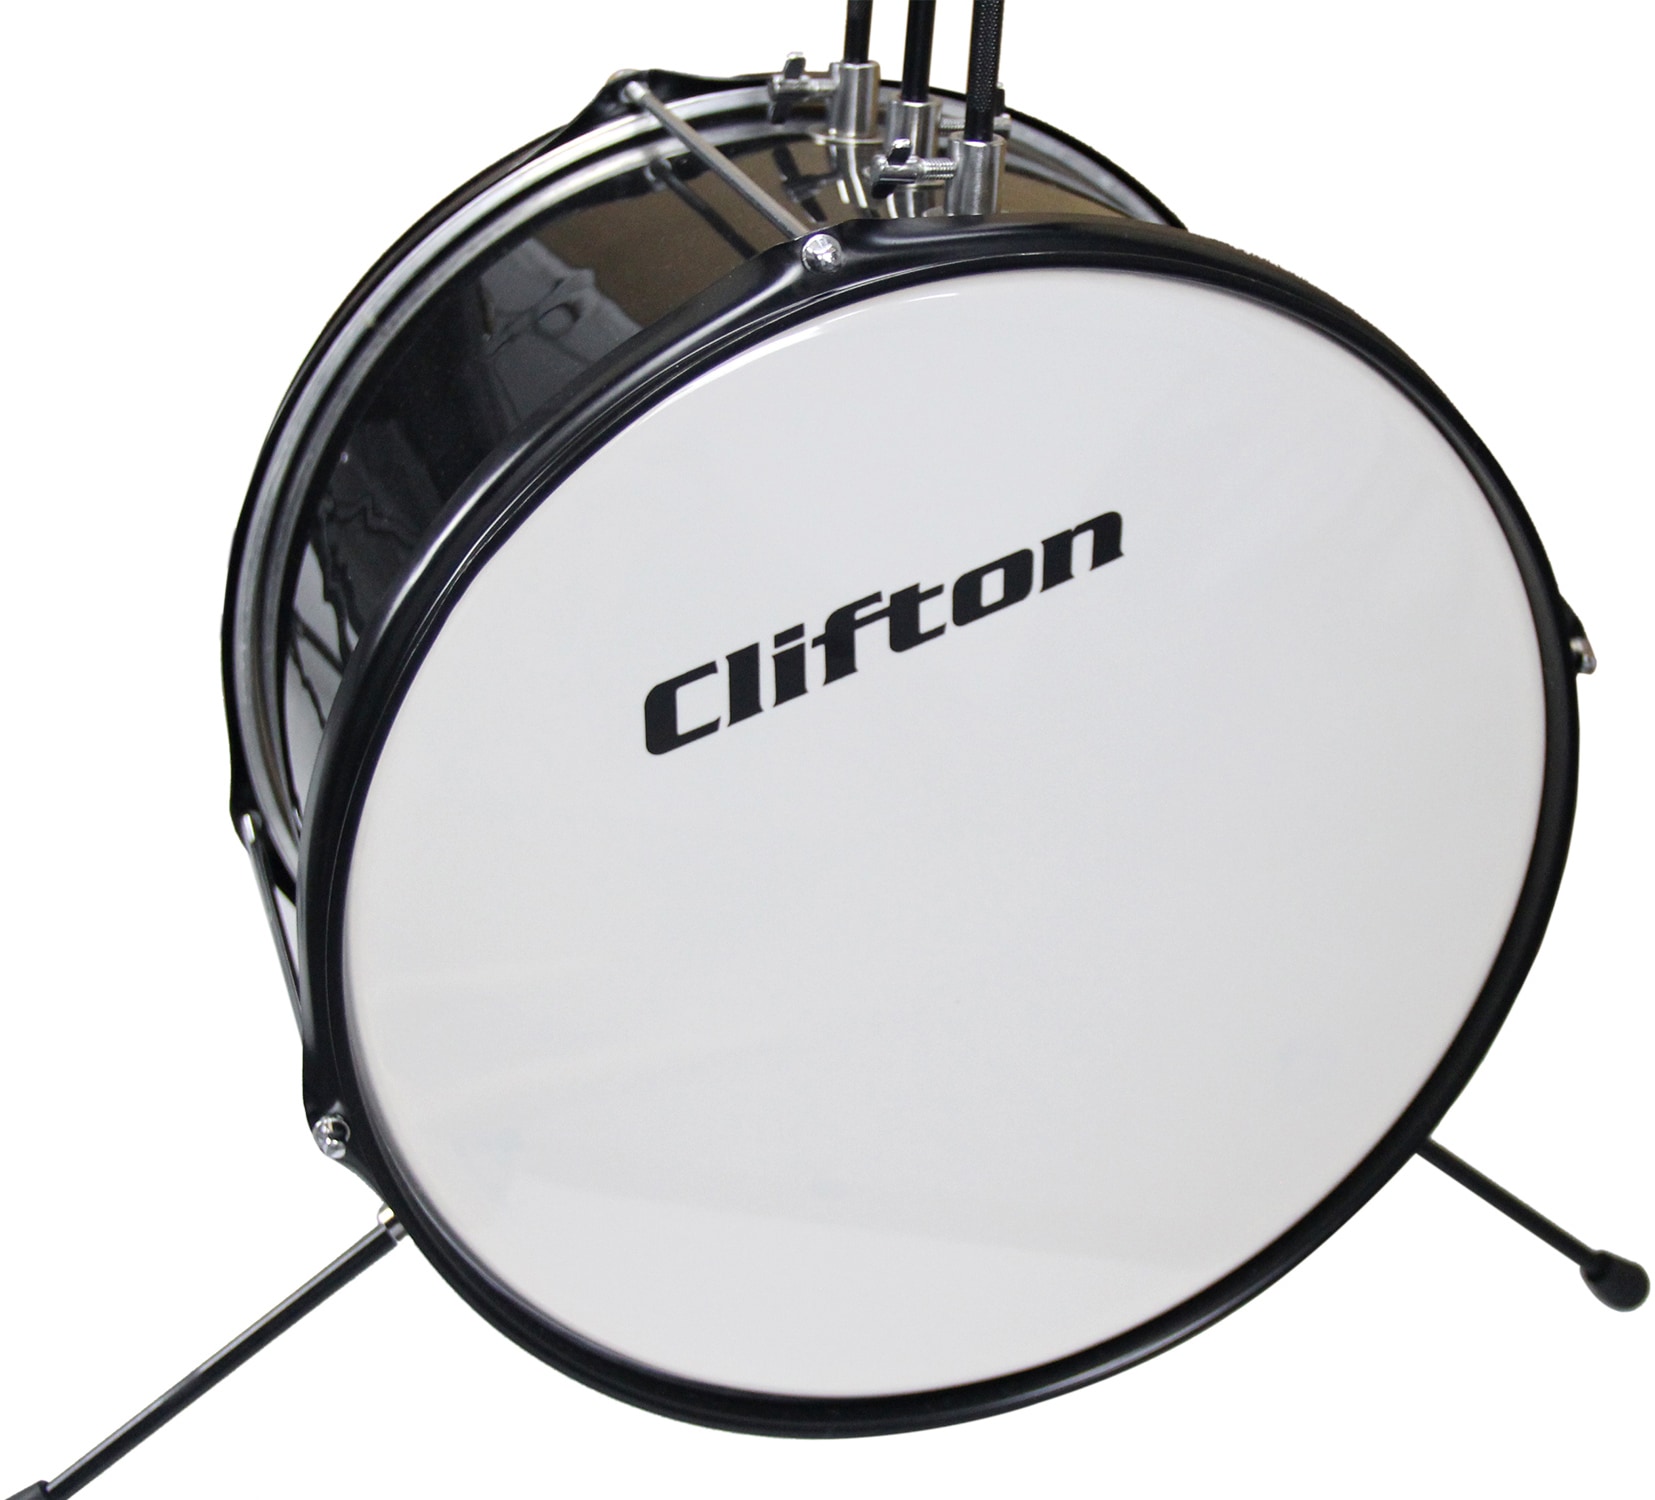 Clifton Kinderschlagzeug »Junior Drum, schwarz«